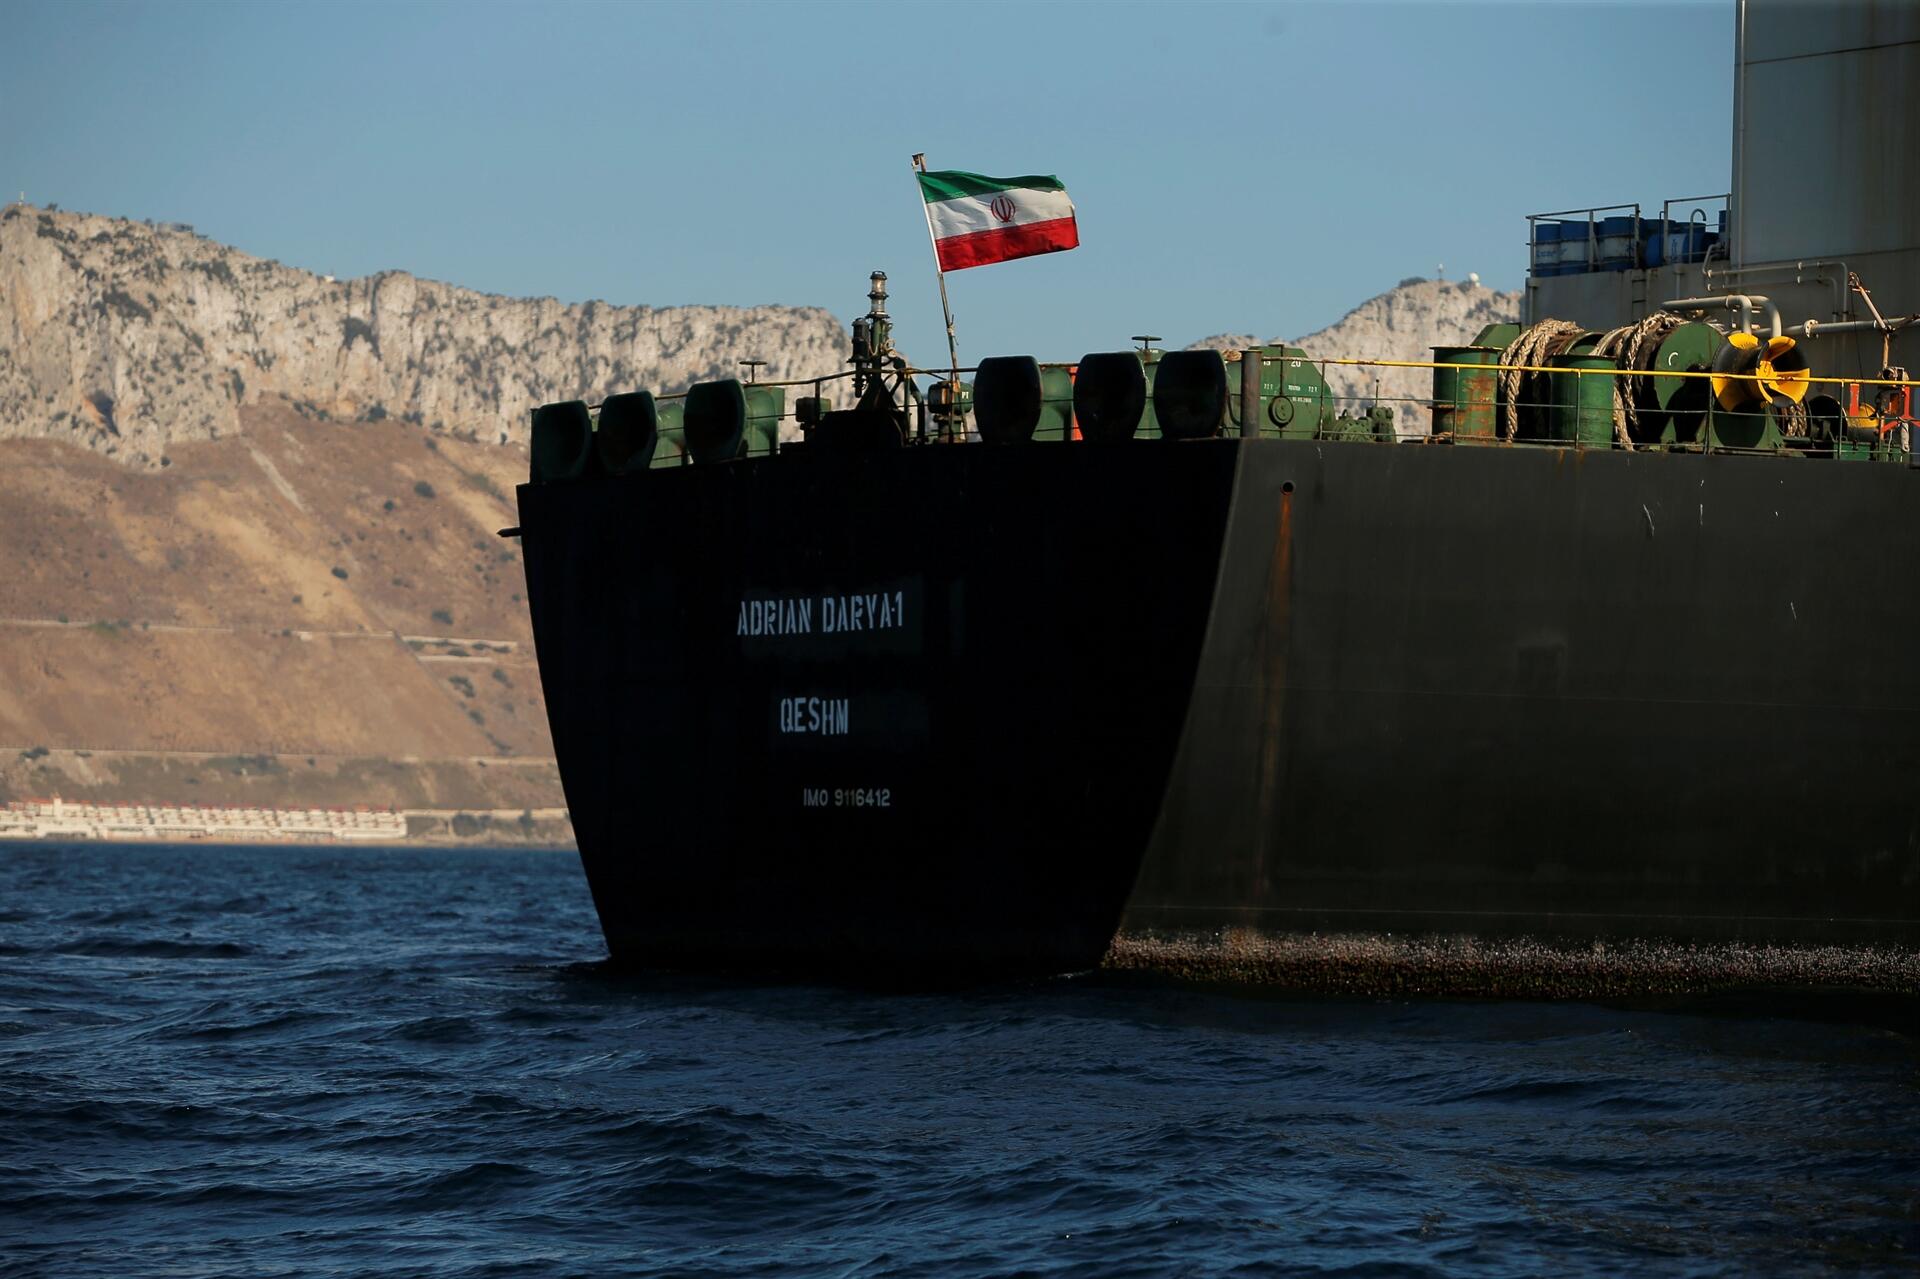 Ιρανός αξιωματούχος: Το ναυτικό μας σε ετοιμότητα να συνοδεύσει το Adrian Darya